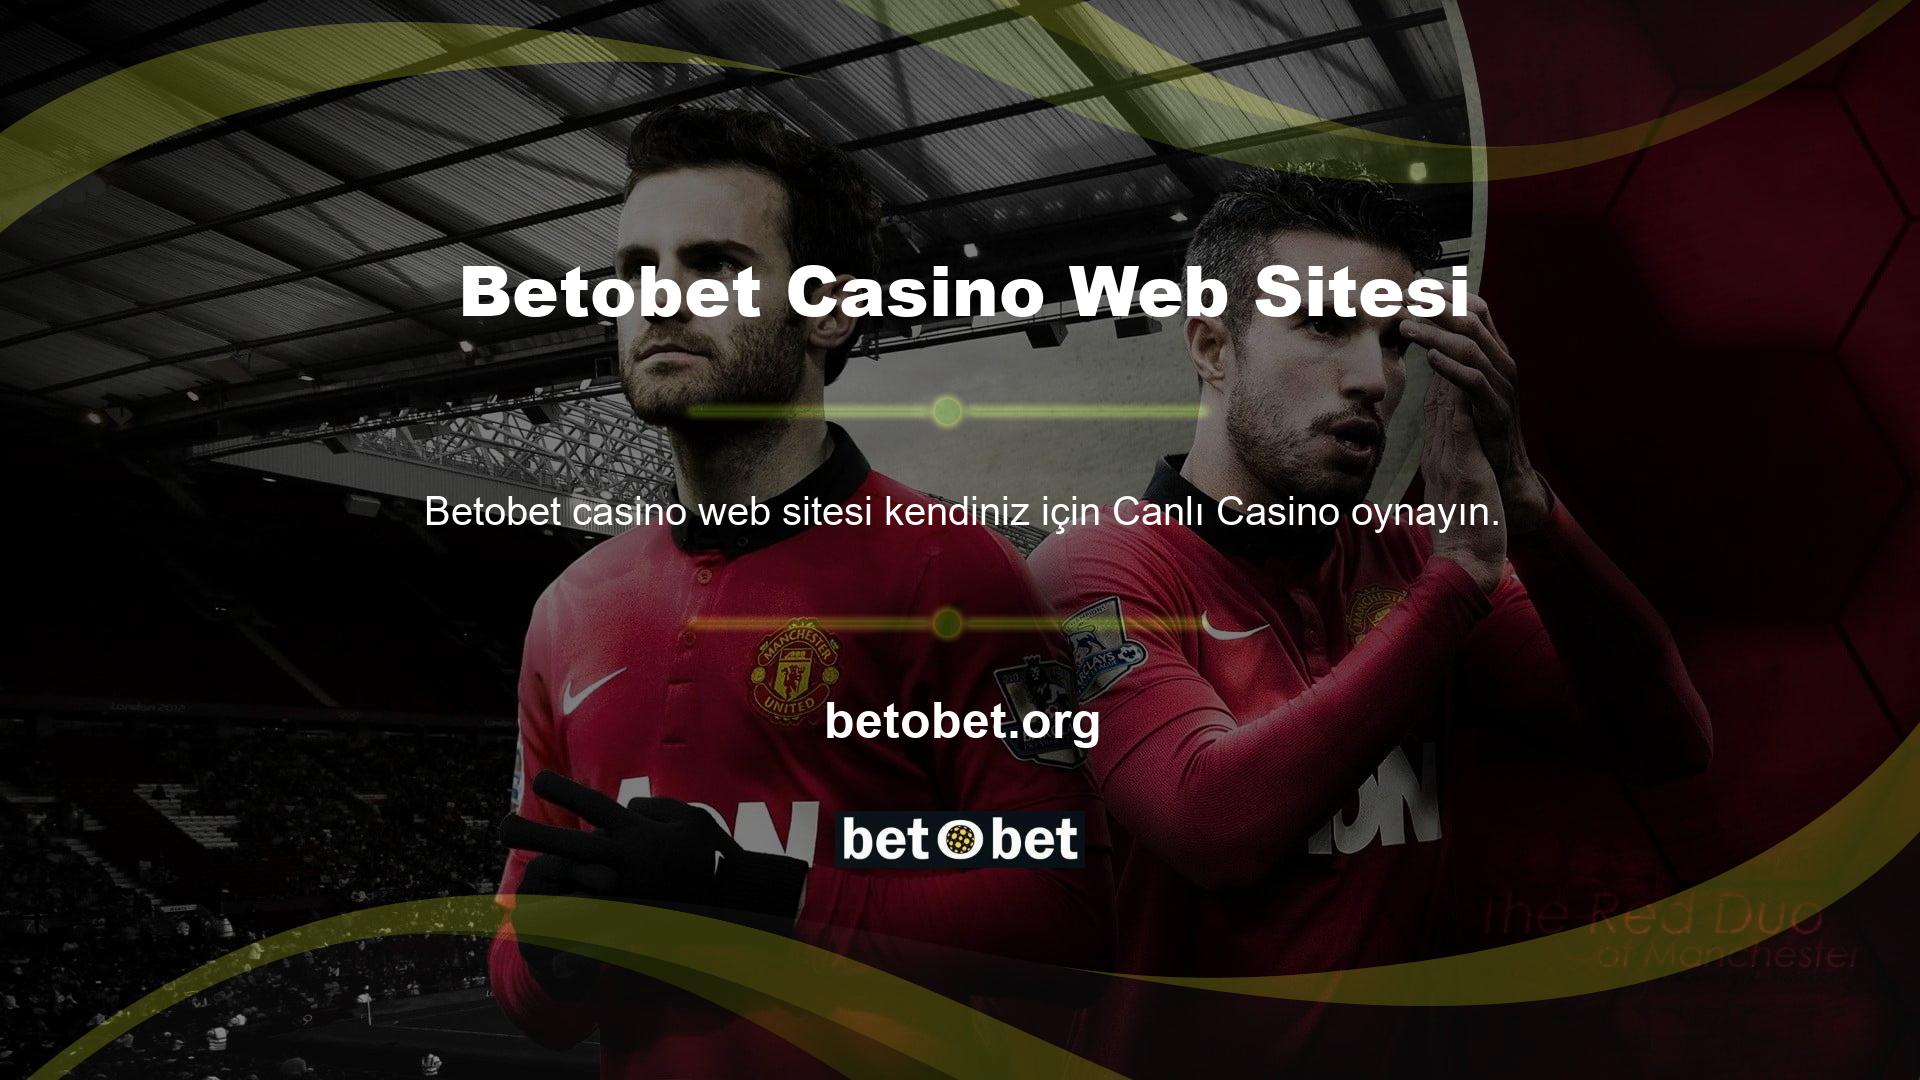 Bu, Betobet casino web sitesinde spor bahisleri ve canlı bahis gibi çeşitli oyunları bu oyun türü için farklı seçeneklerle oynayabileceğiniz anlamına gelir